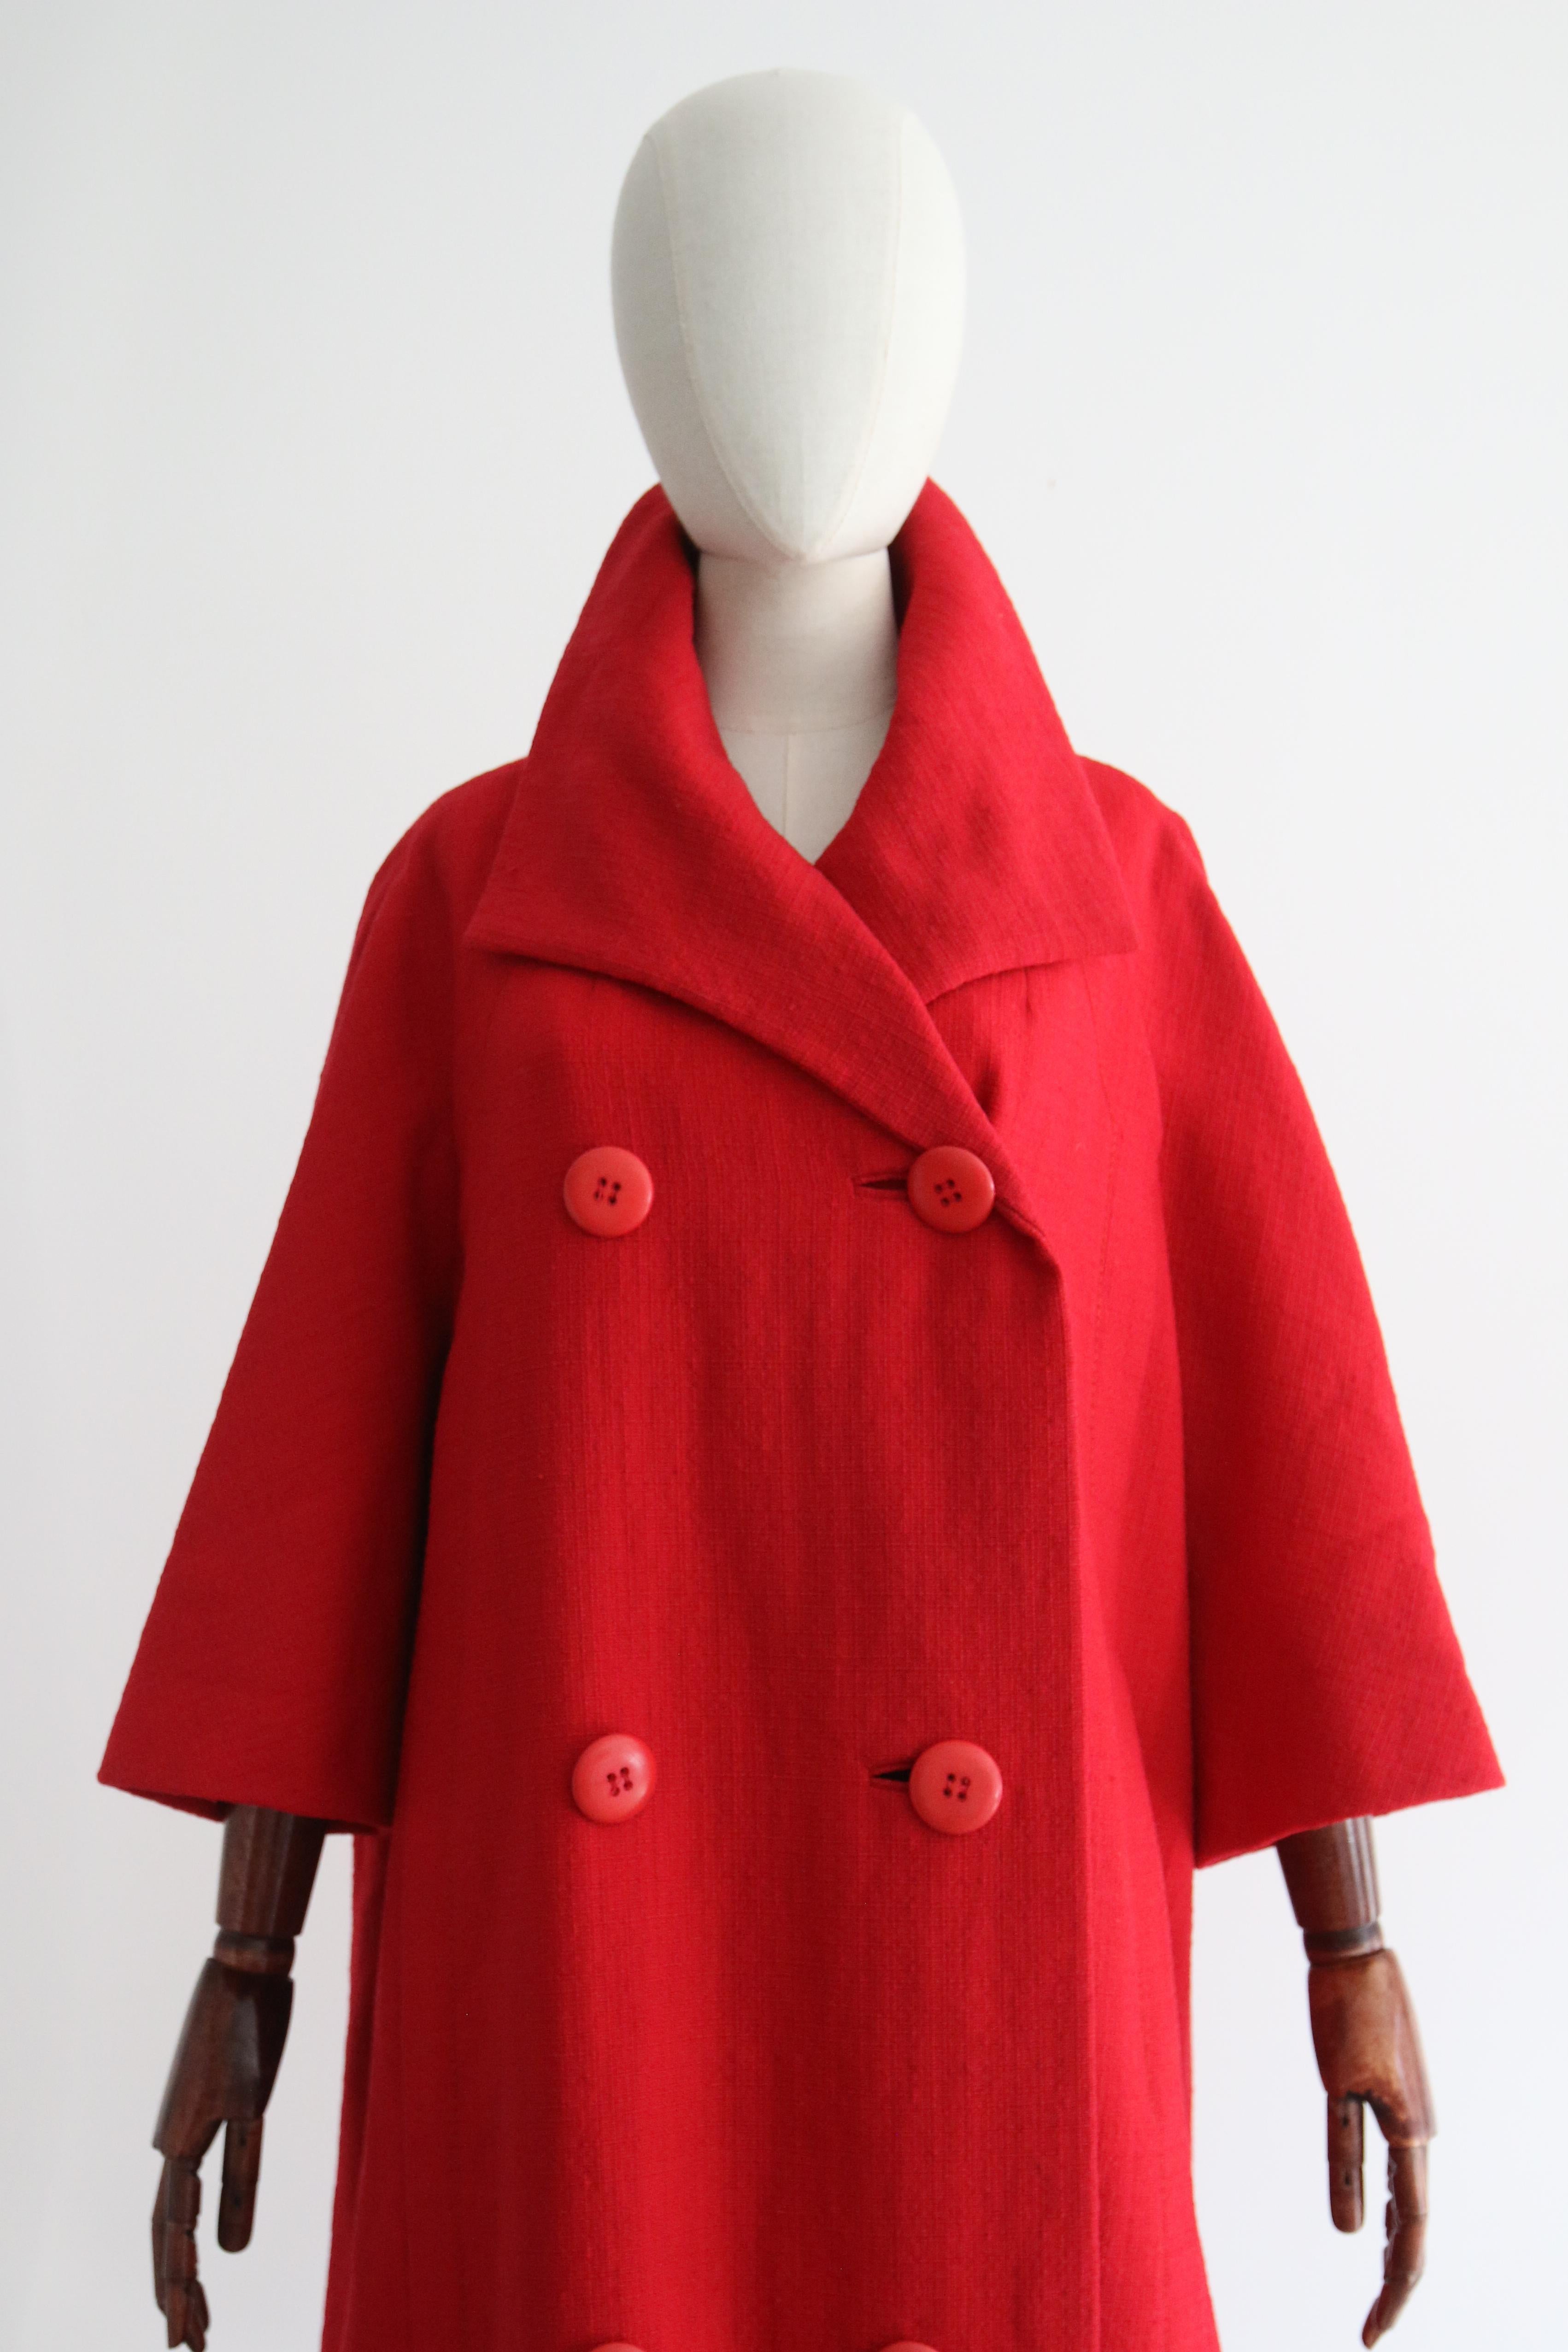 Ce manteau de laine rouge de mi-saison de Christian Dior, datant des années 1960, est une pièce rare à voir et une pièce parfaite pour votre garde-robe de transition. 

L'encolure en V du manteau est encadrée par un large col pointu, qui met en